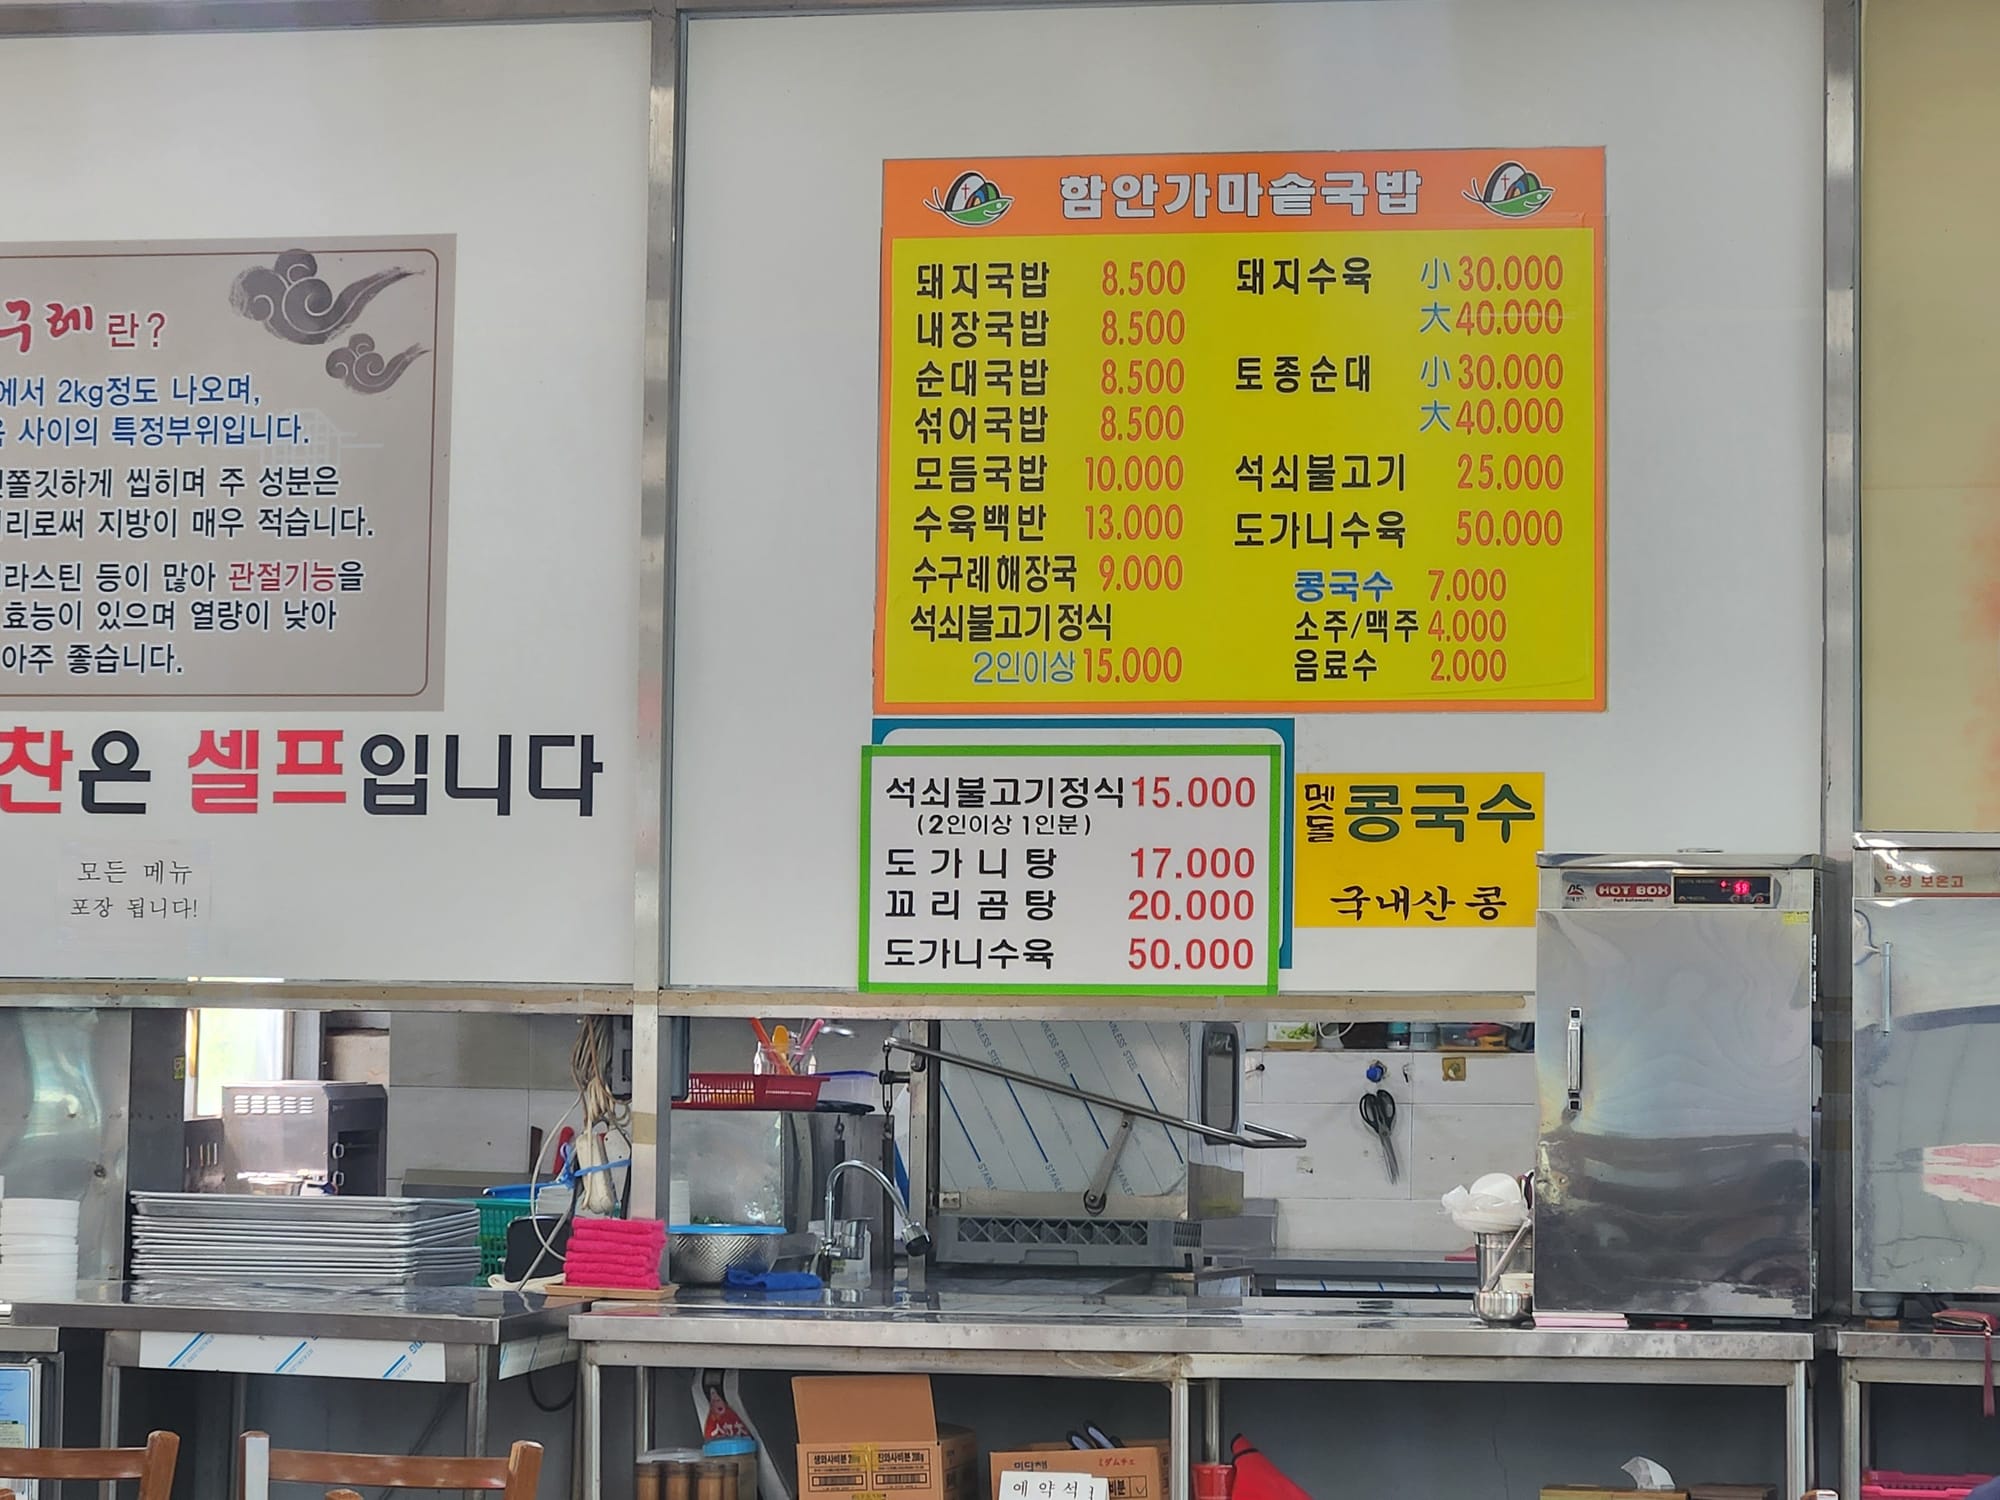 함안 수구레 국밥 맛집